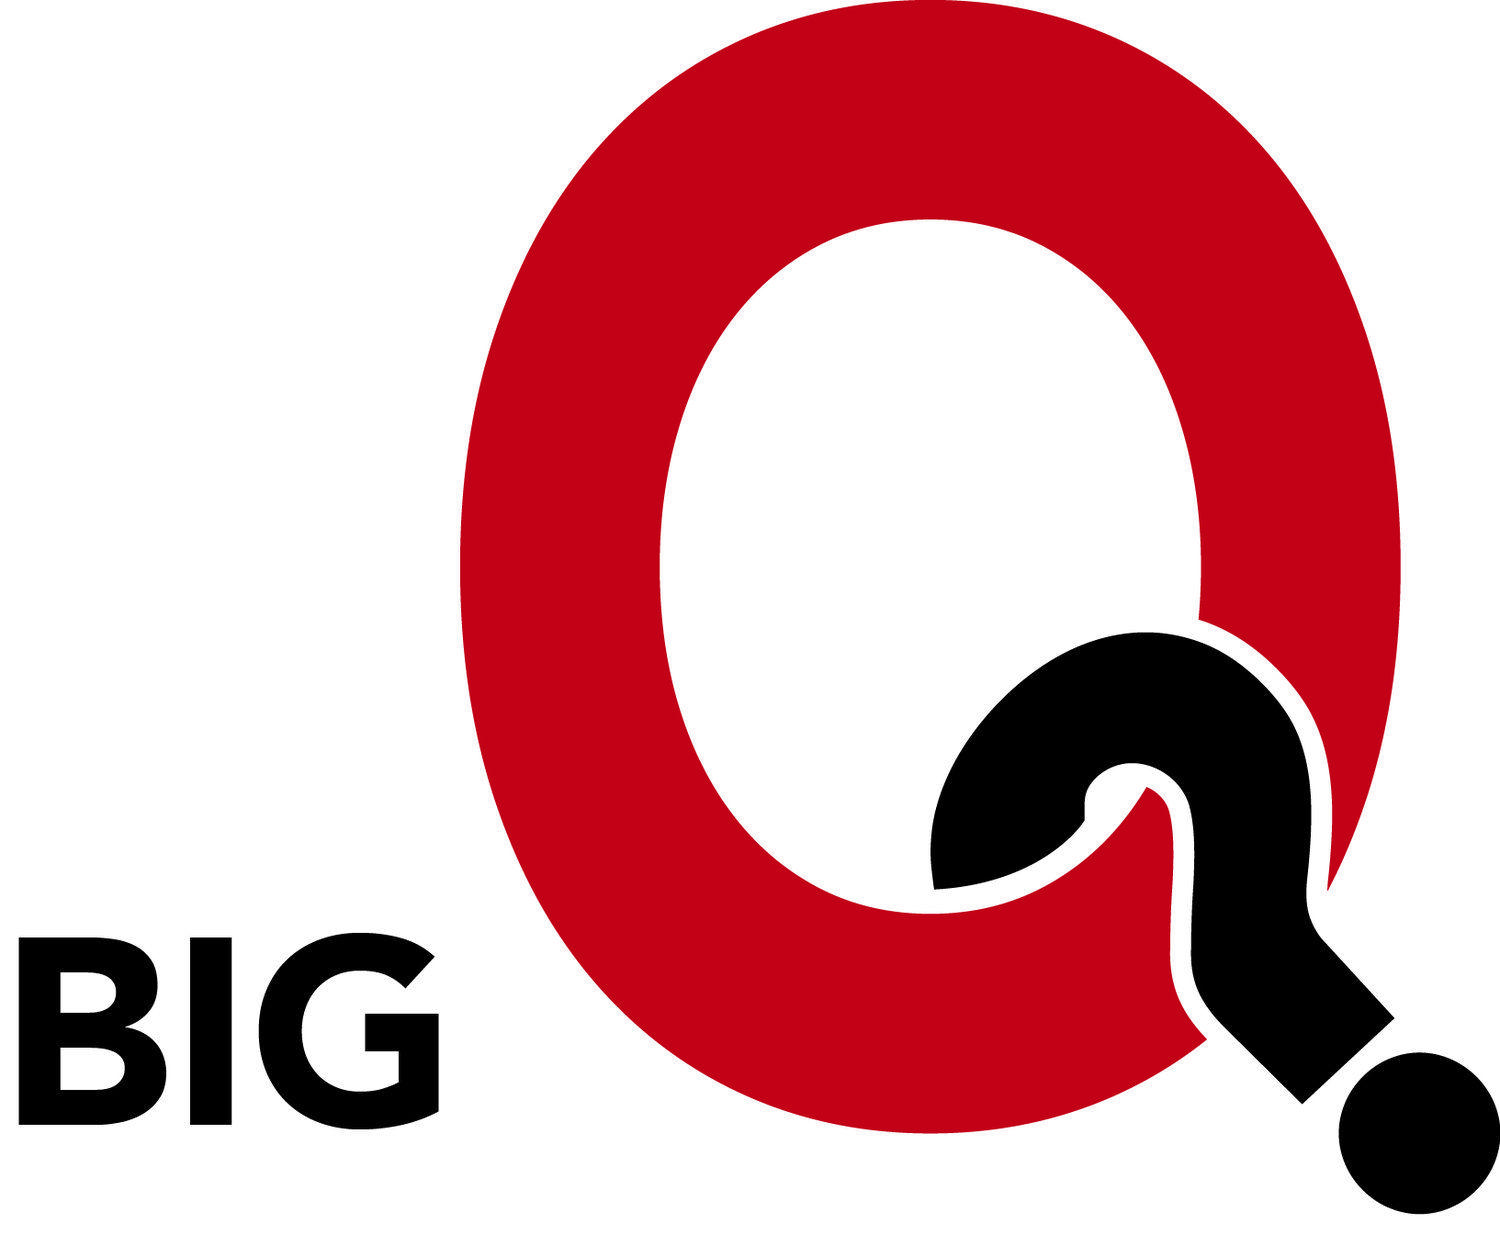 Big Red Q Logo - The Big Q